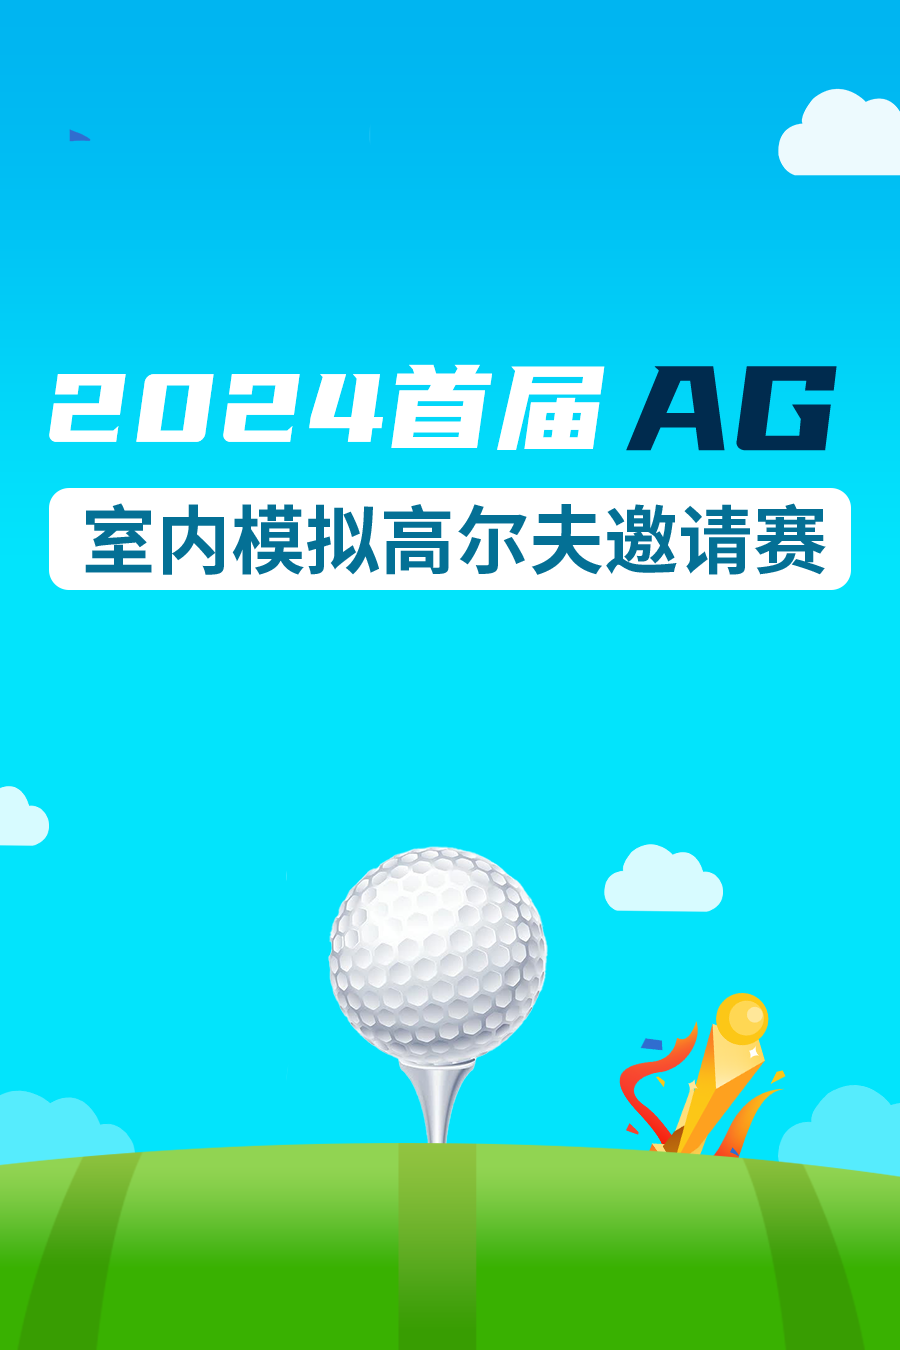 2024首届AG室内模拟高尔夫邀请赛